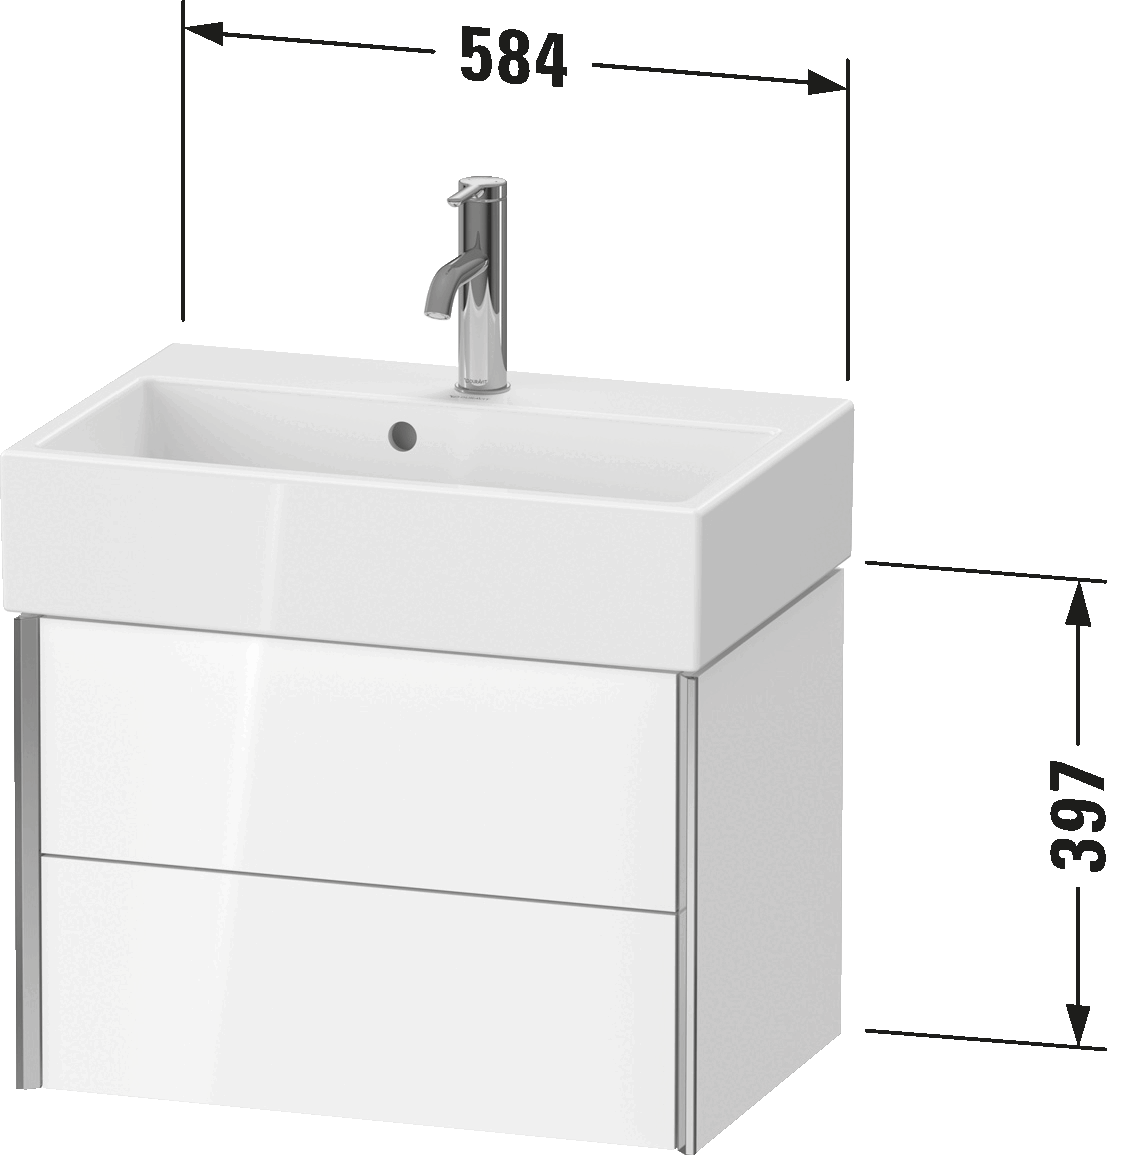 ארון אמבטיה תלוי על הקיר, XV4316